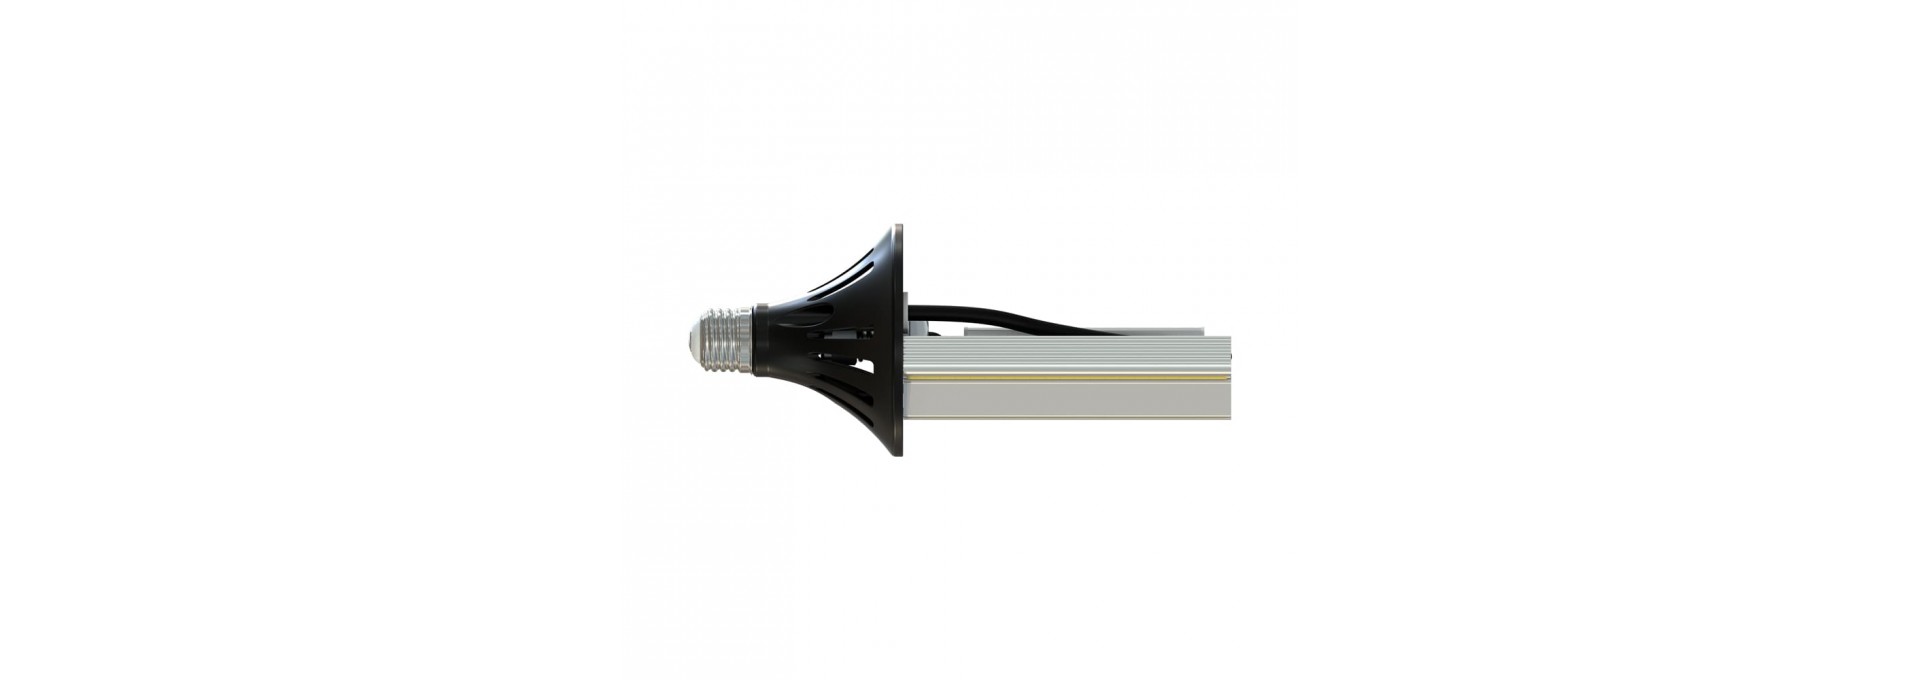 Светодиодная лампа ПромЛед Е27-Д 10 COB 6500К